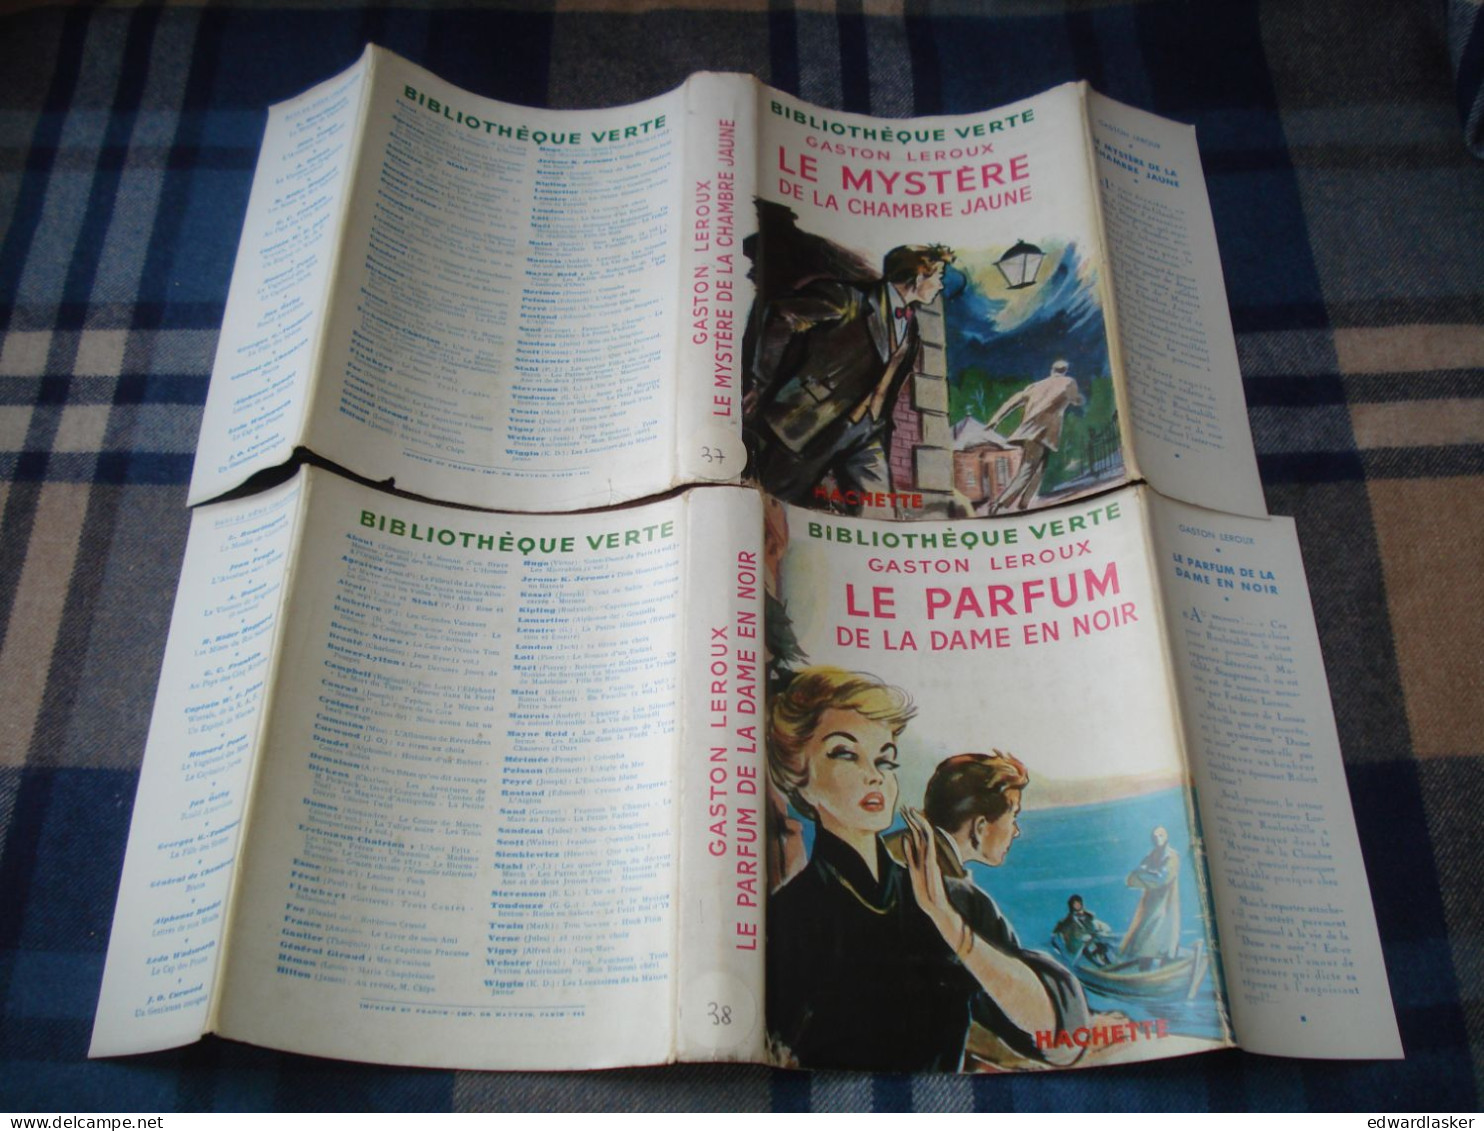 BIBLIOTHEQUE VERTE : Mystère de la Chambre Jaune + Parfum de la Dame en noir /Gaston Leroux - jaquette 1953 - Reschofsky